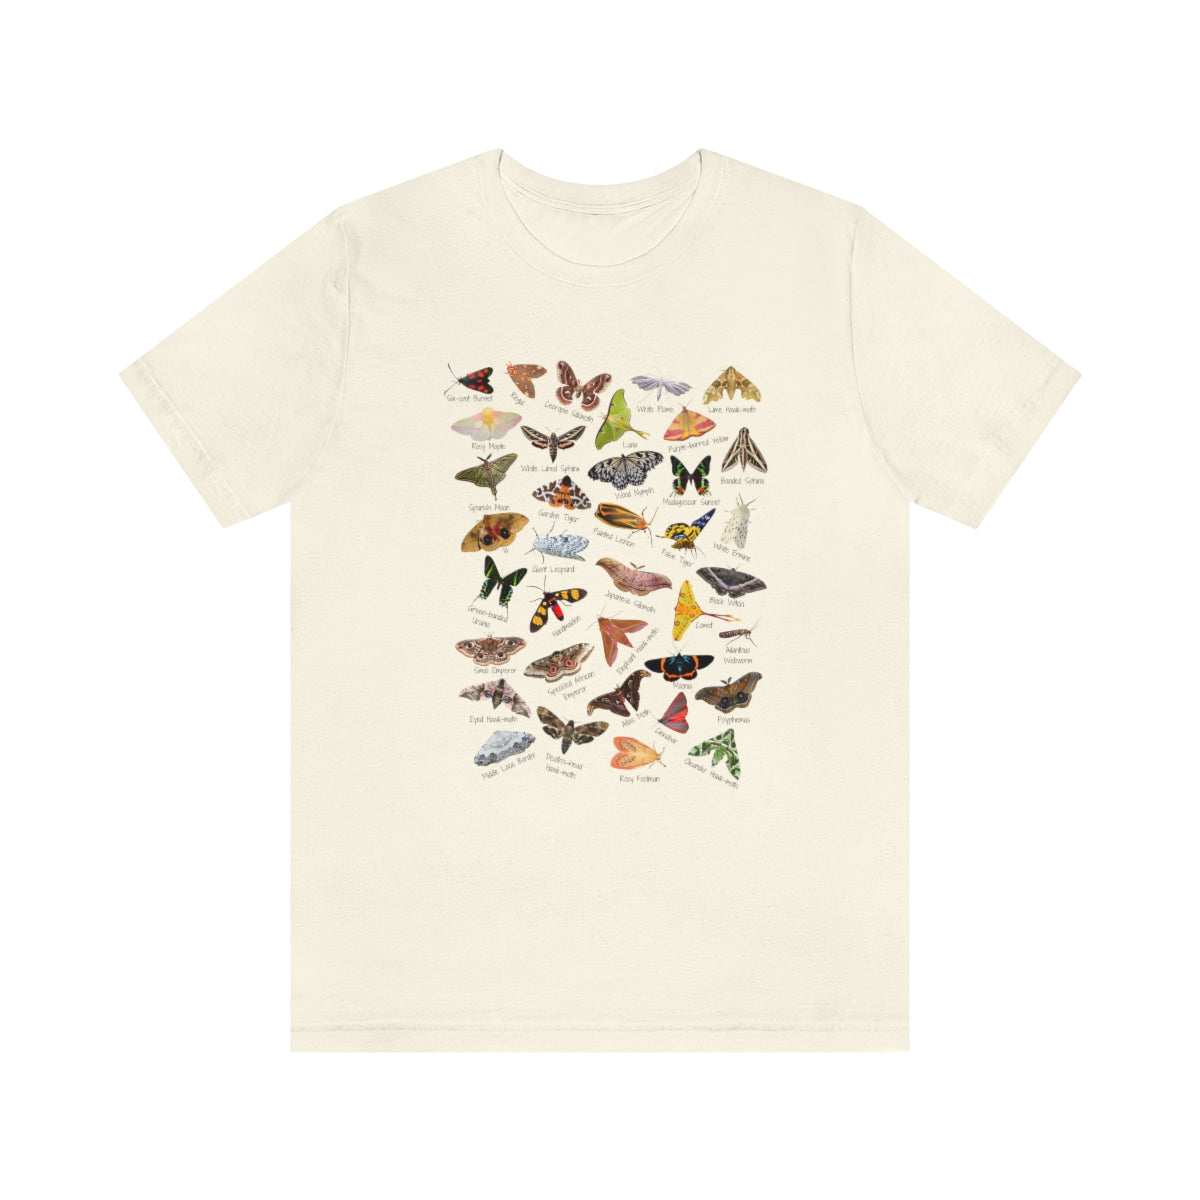 Marvelous Moths T-shirt